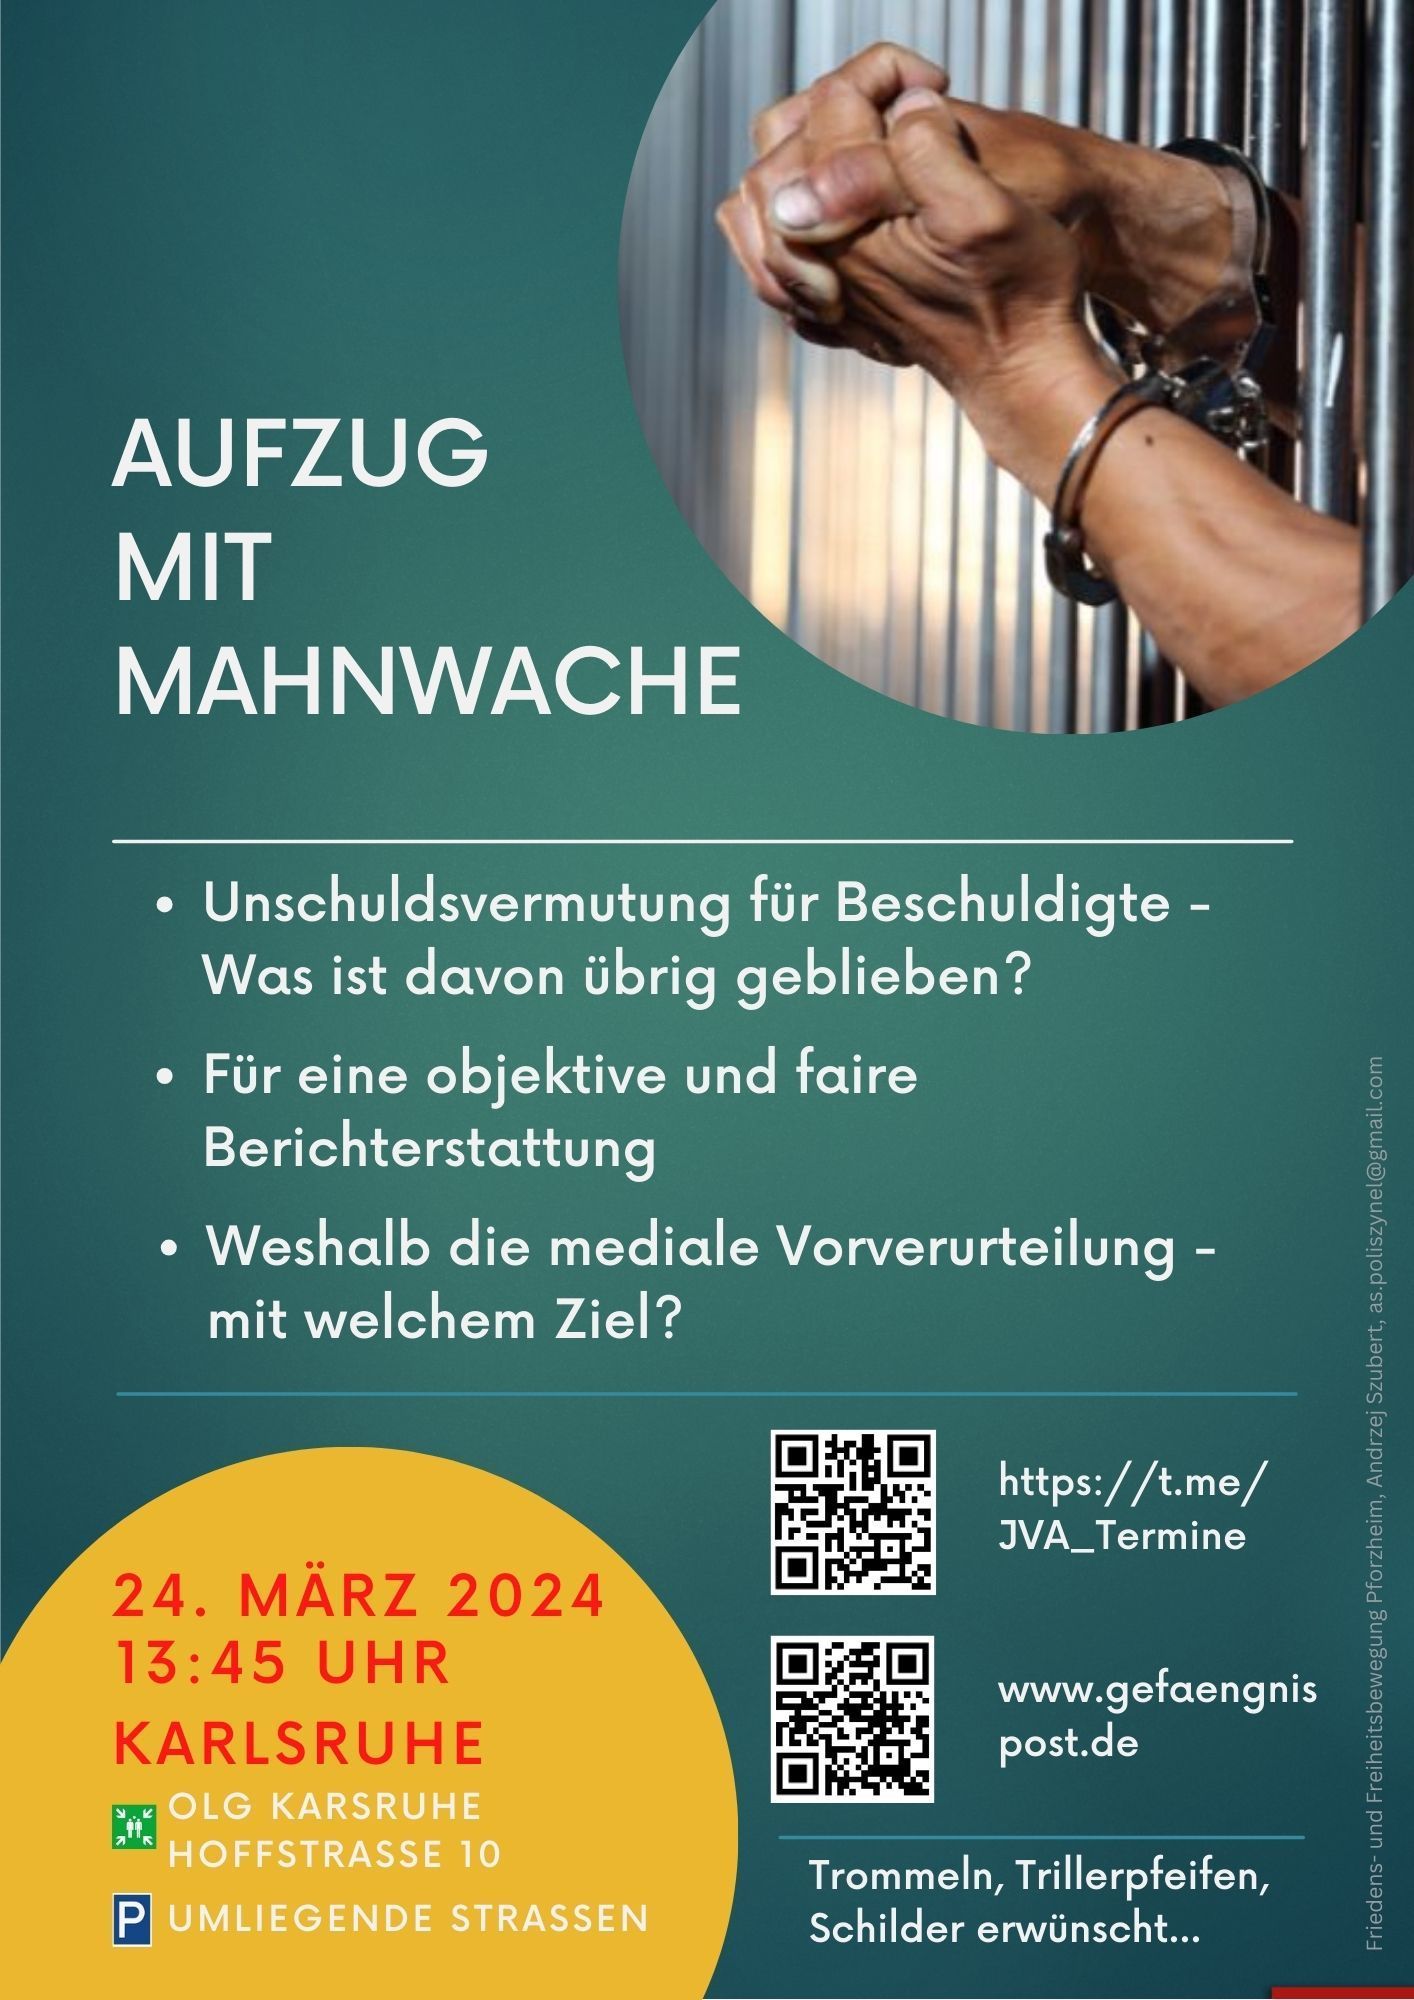 Mahnwache mit Aufzug für Unschuldsvermutung - OLG Karlsruhe, Hoffstraße 10, 24.03.2024 13:45 Uhr